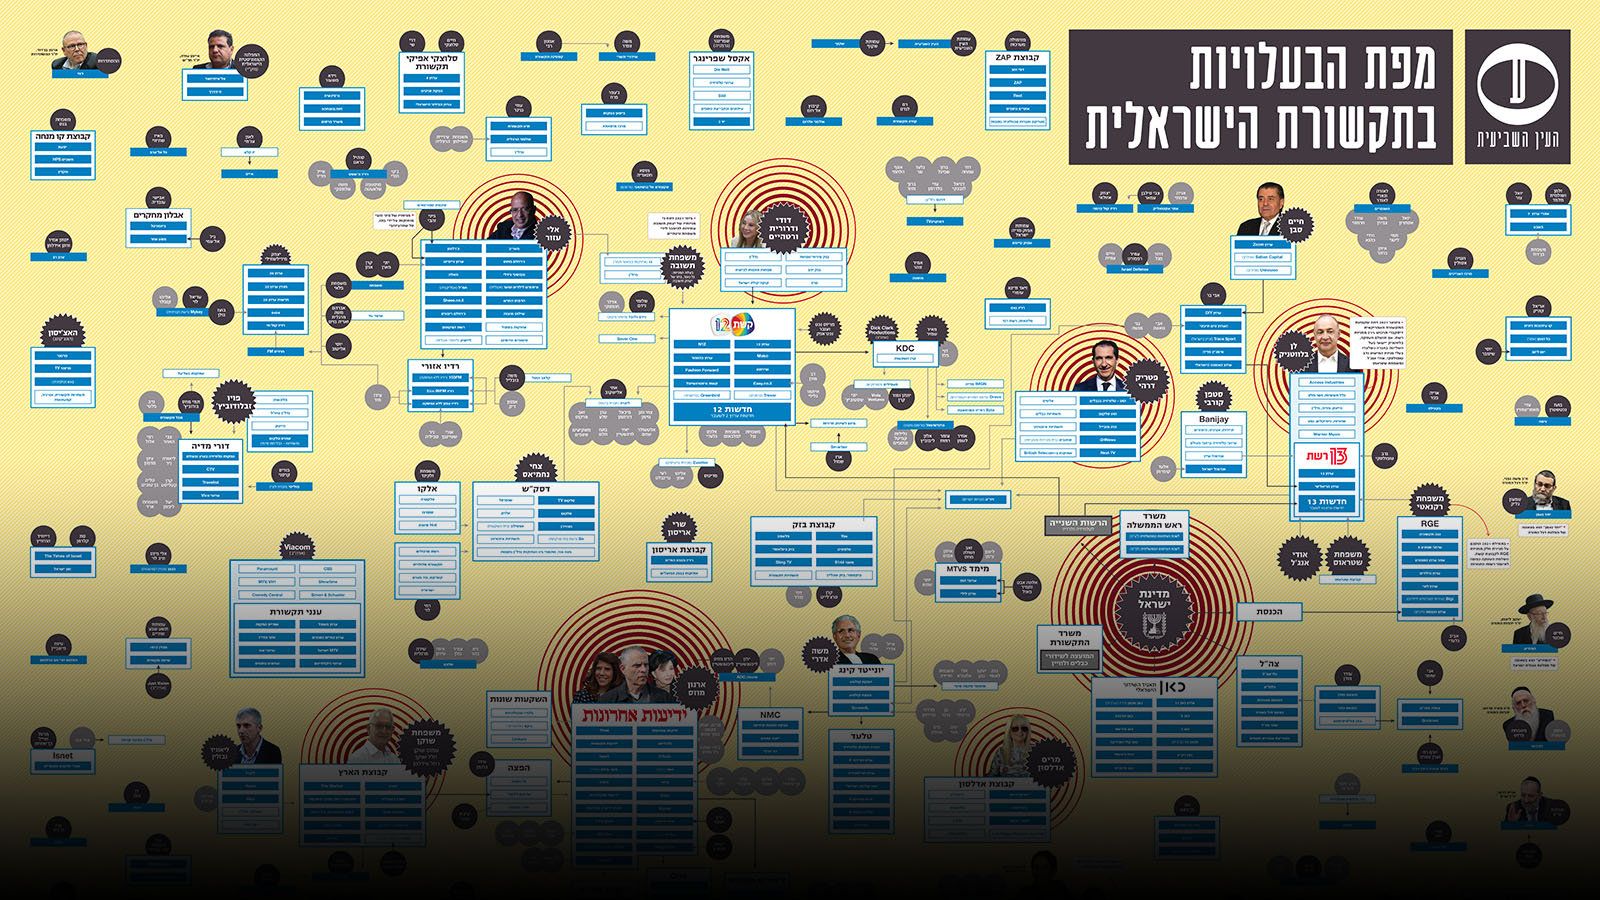 מפת הבעלויות בתקשורת הישראלית